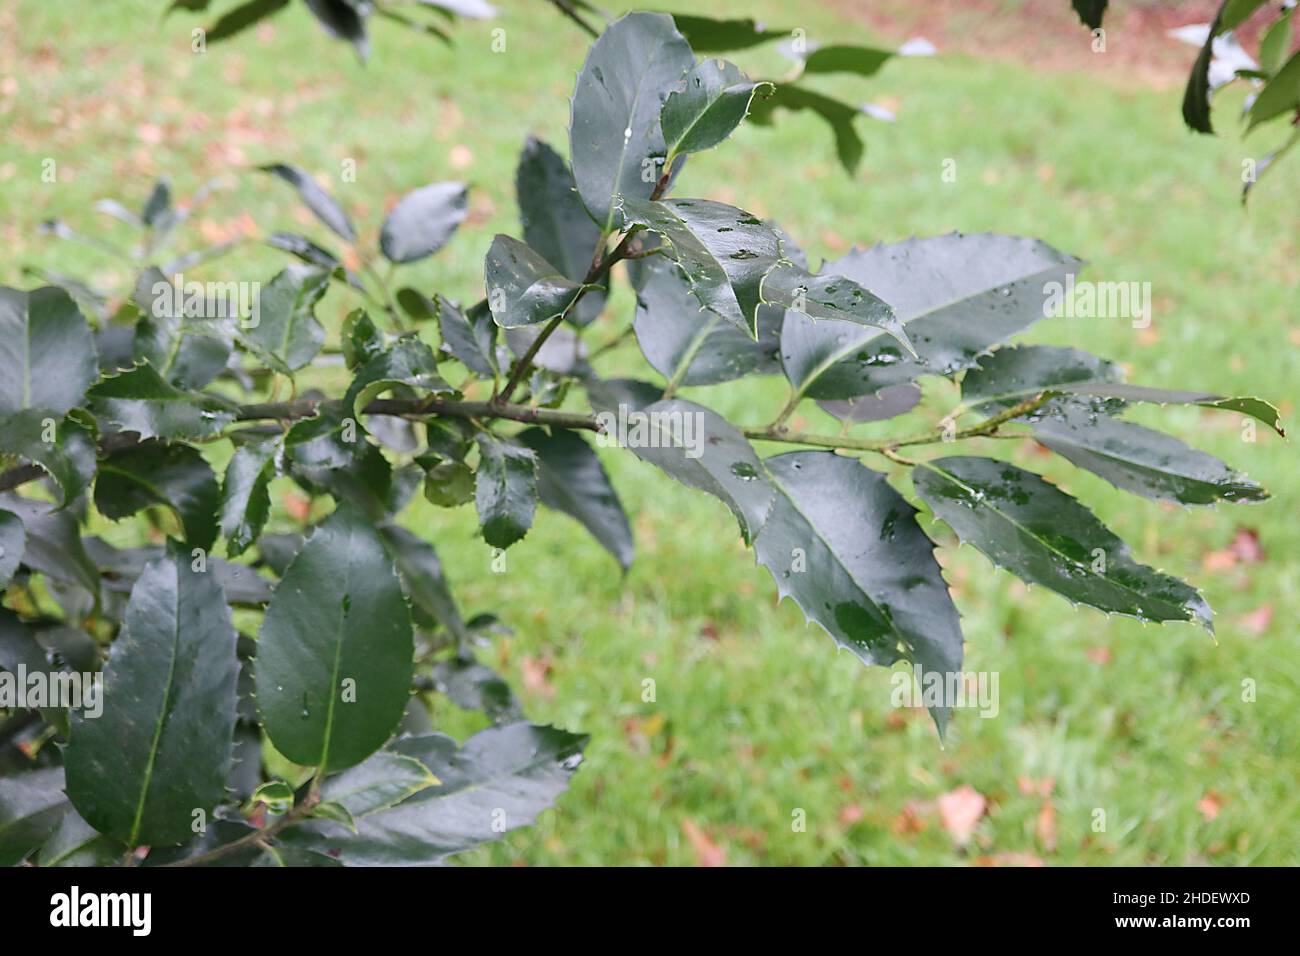 Ilex x koehneana «foglia di castagno» foglia di castagno – foglie di castagno verde scuro con margini spinosi uniformemente distanziati, gennaio, Inghilterra, Regno Unito Foto Stock